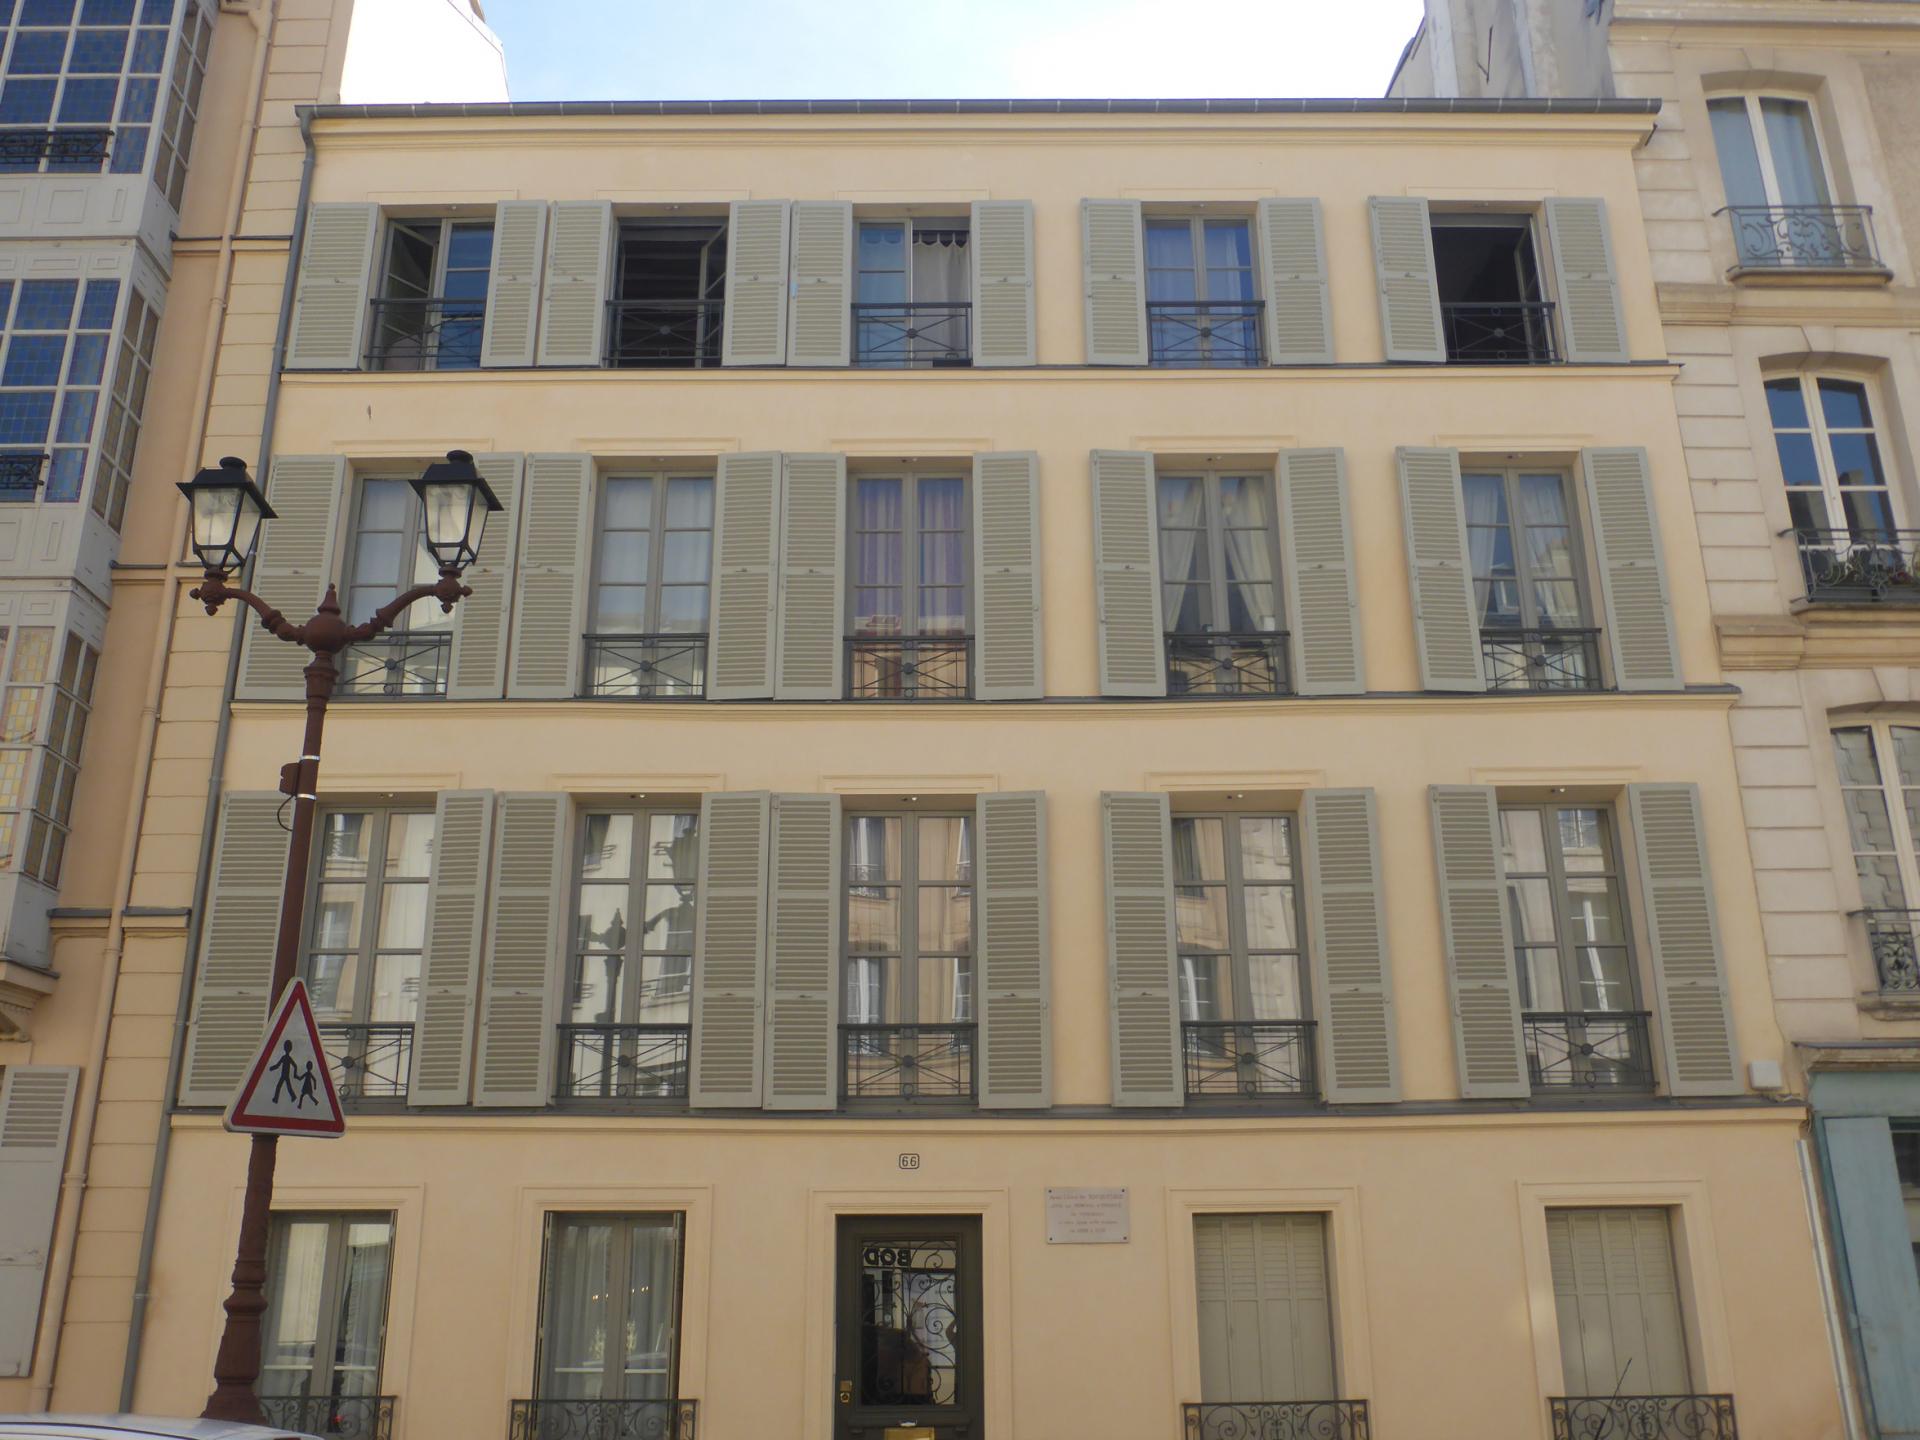 Logement de Tocqueville à Versailles, 66 rue d'Anjou, cl. Ph. Cachau